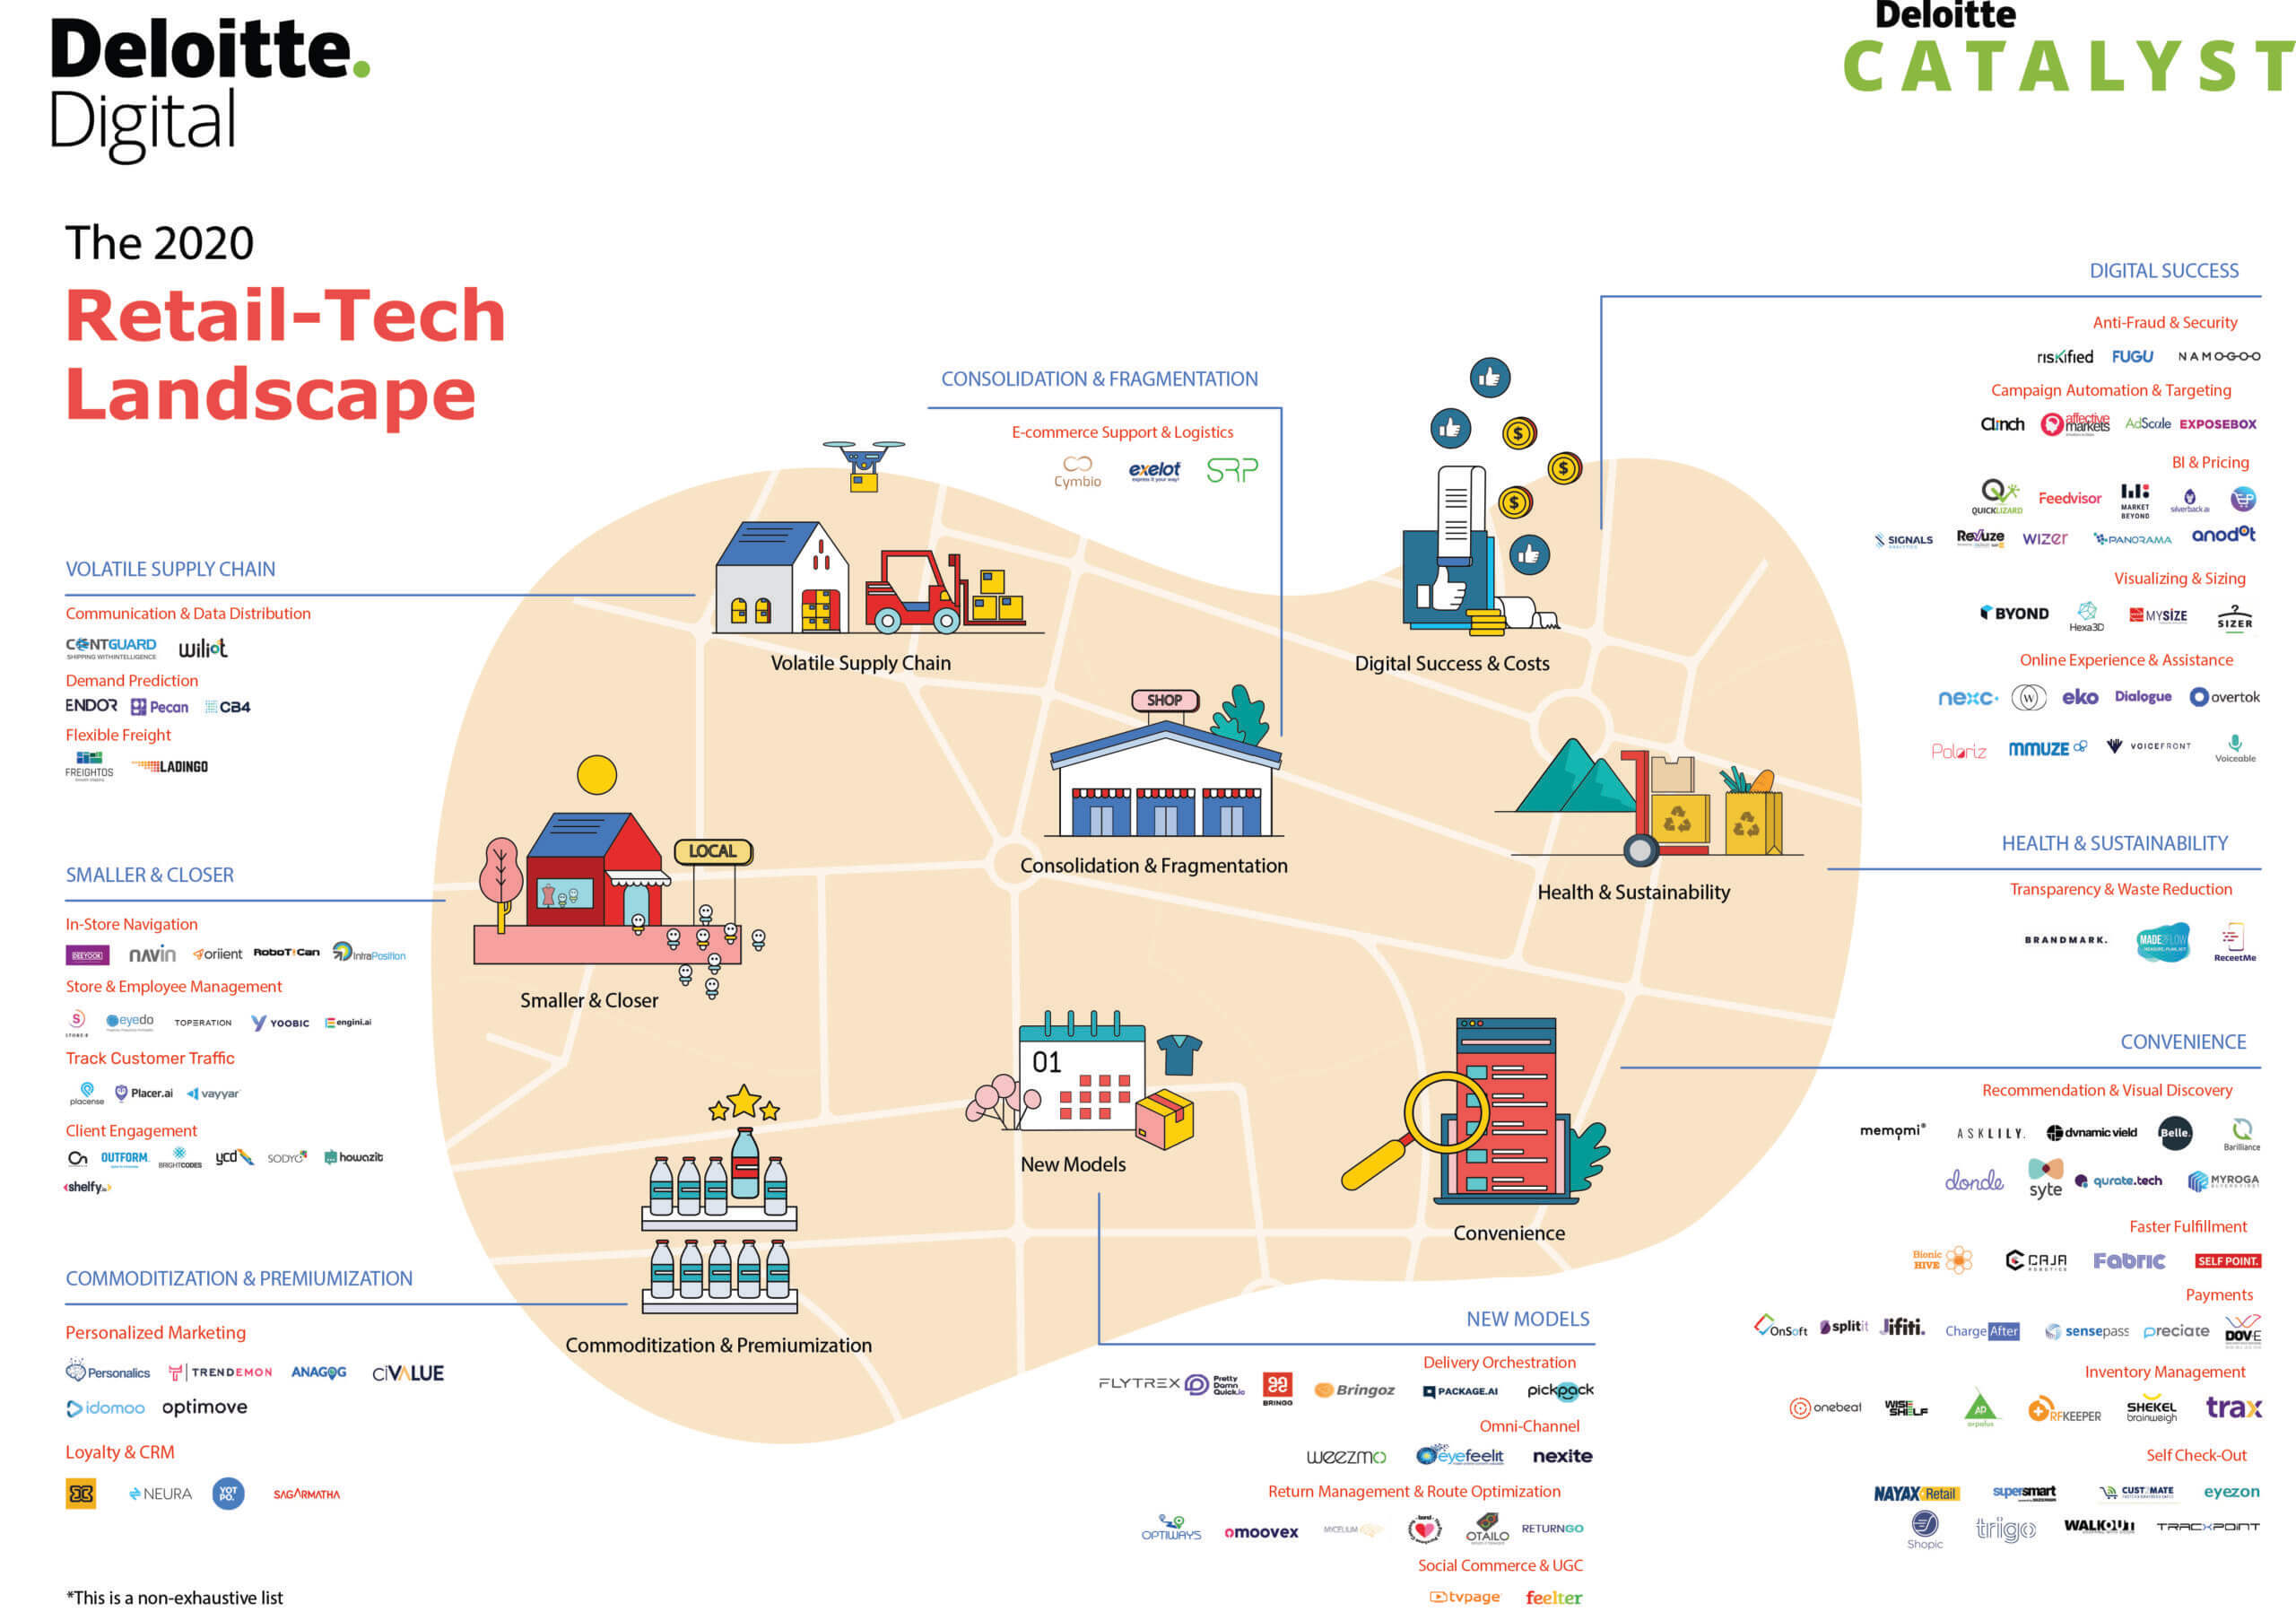 Deloitte Israel's Retail-Tech Landscape